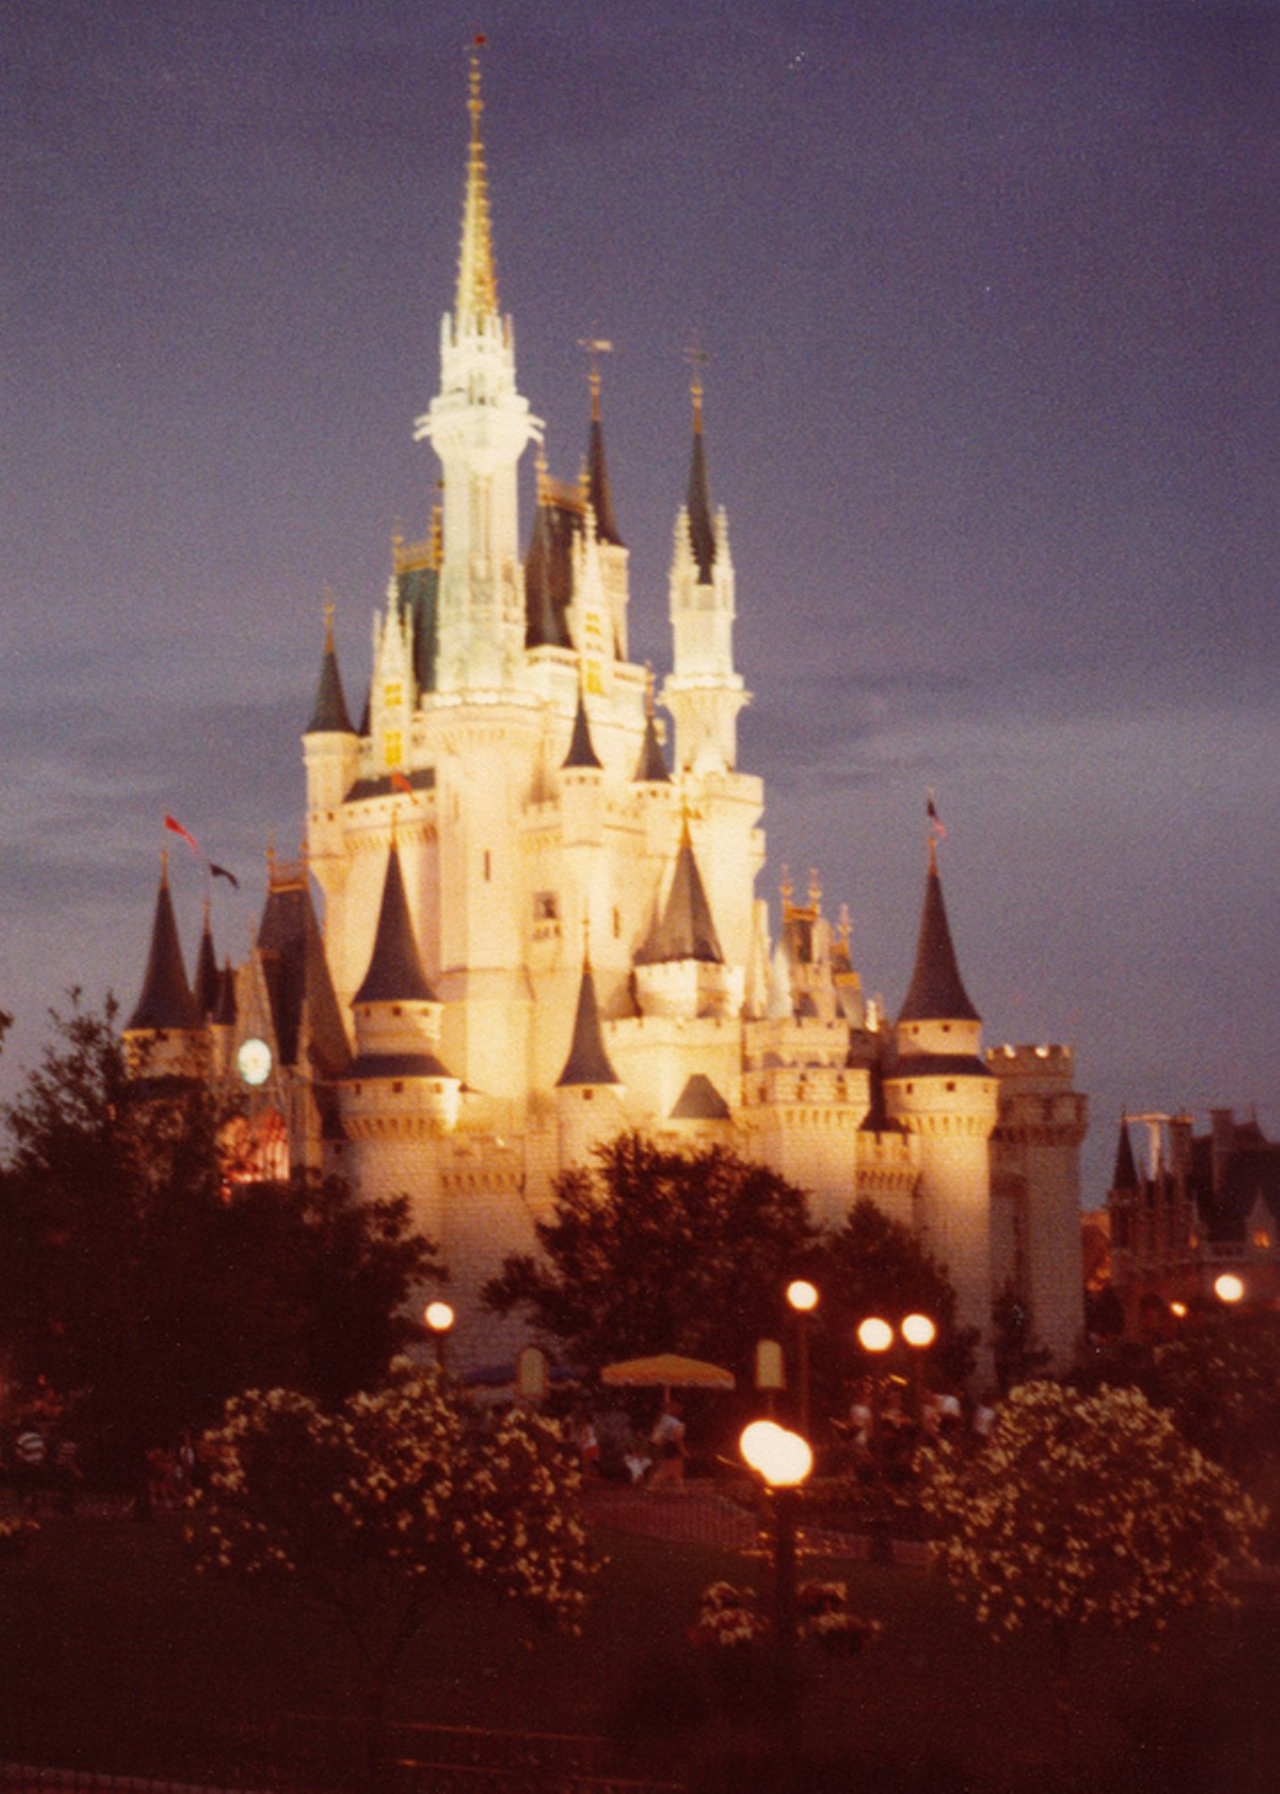 Cinderella castle.